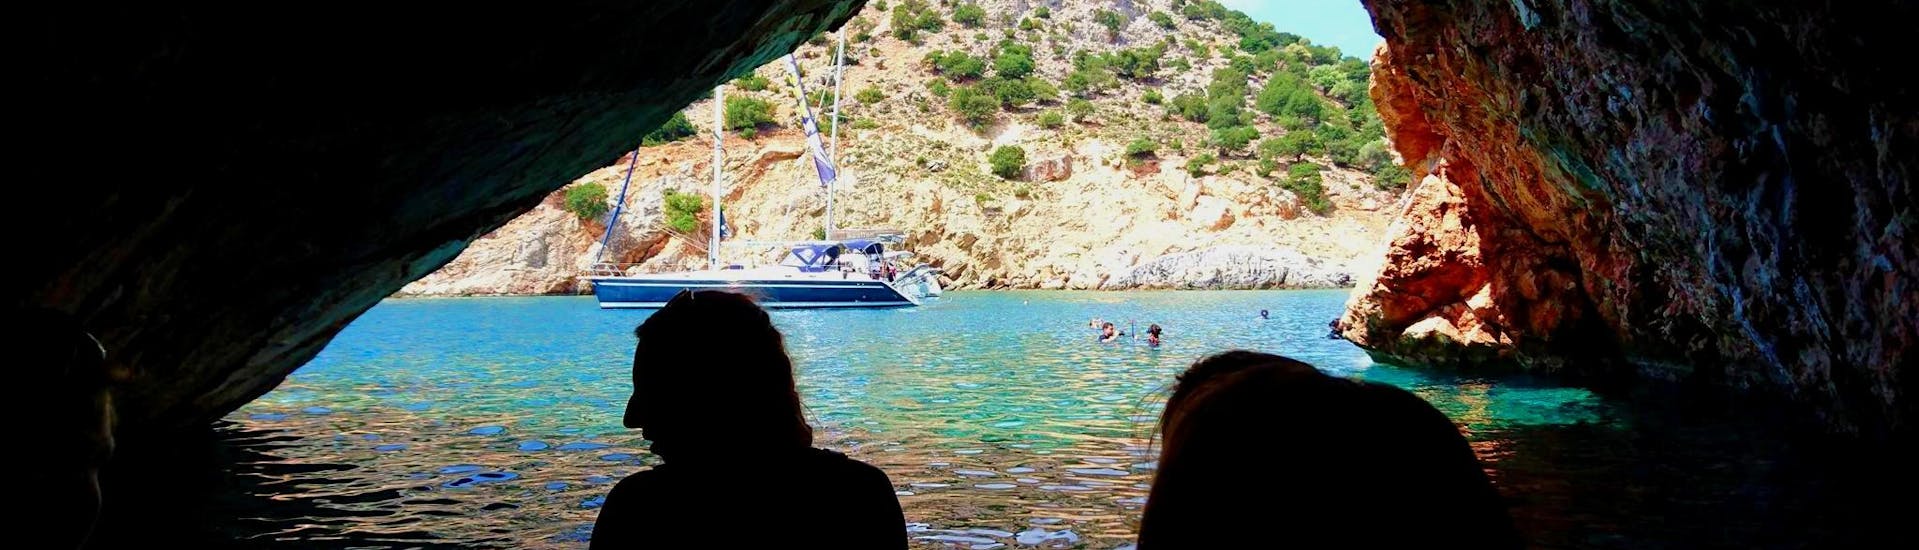 Paseo en velero privado de Naxos (Town) con baño en el mar & visita guiada.